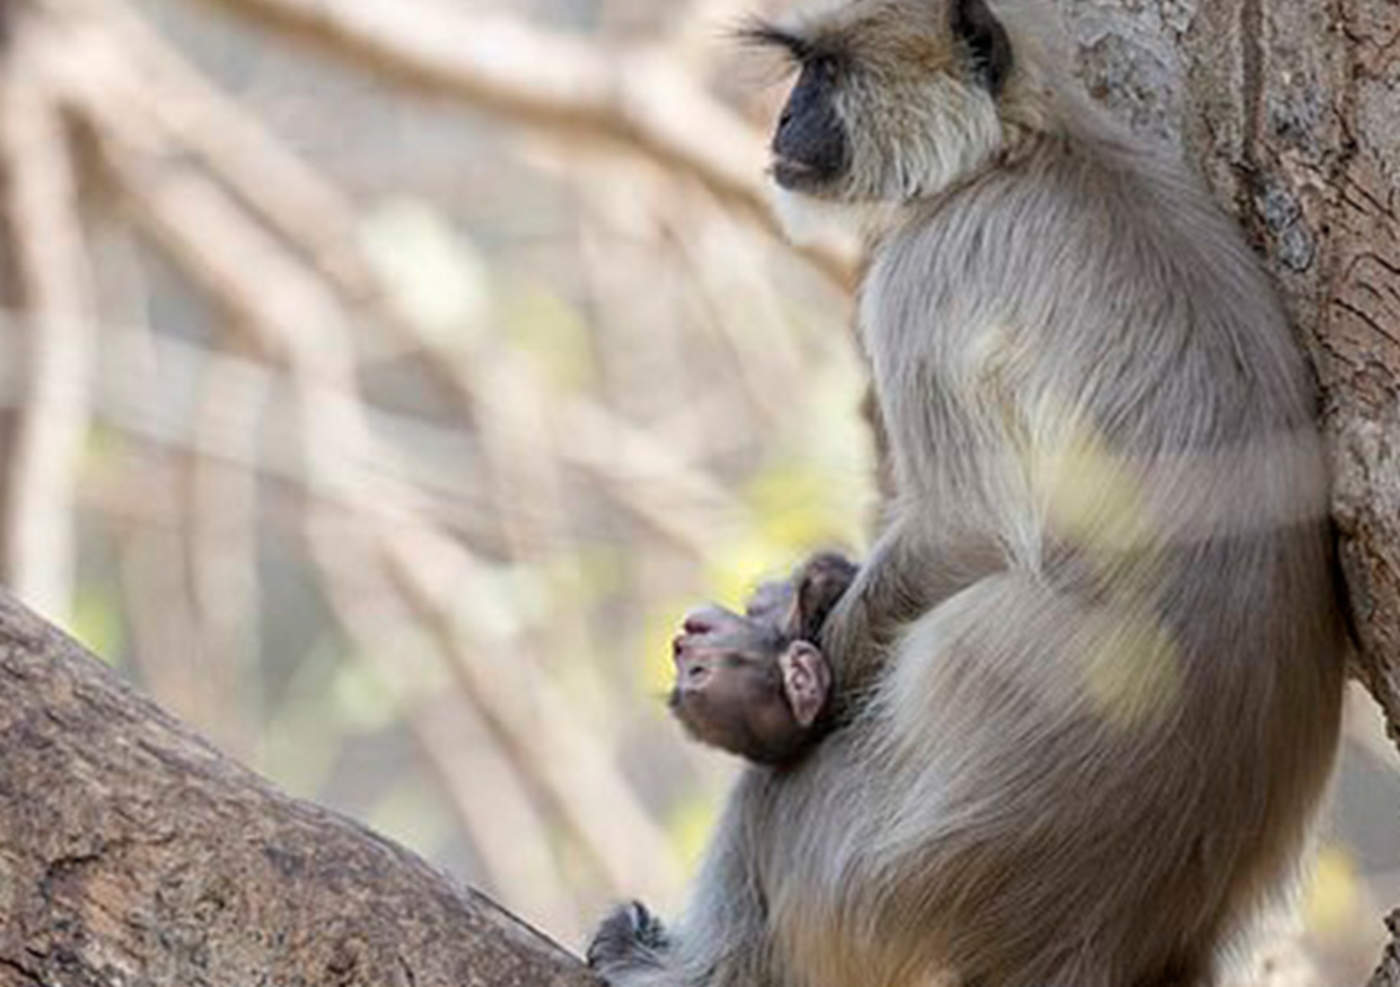 Mamá mono conmueve al no soltar a su cría muerta